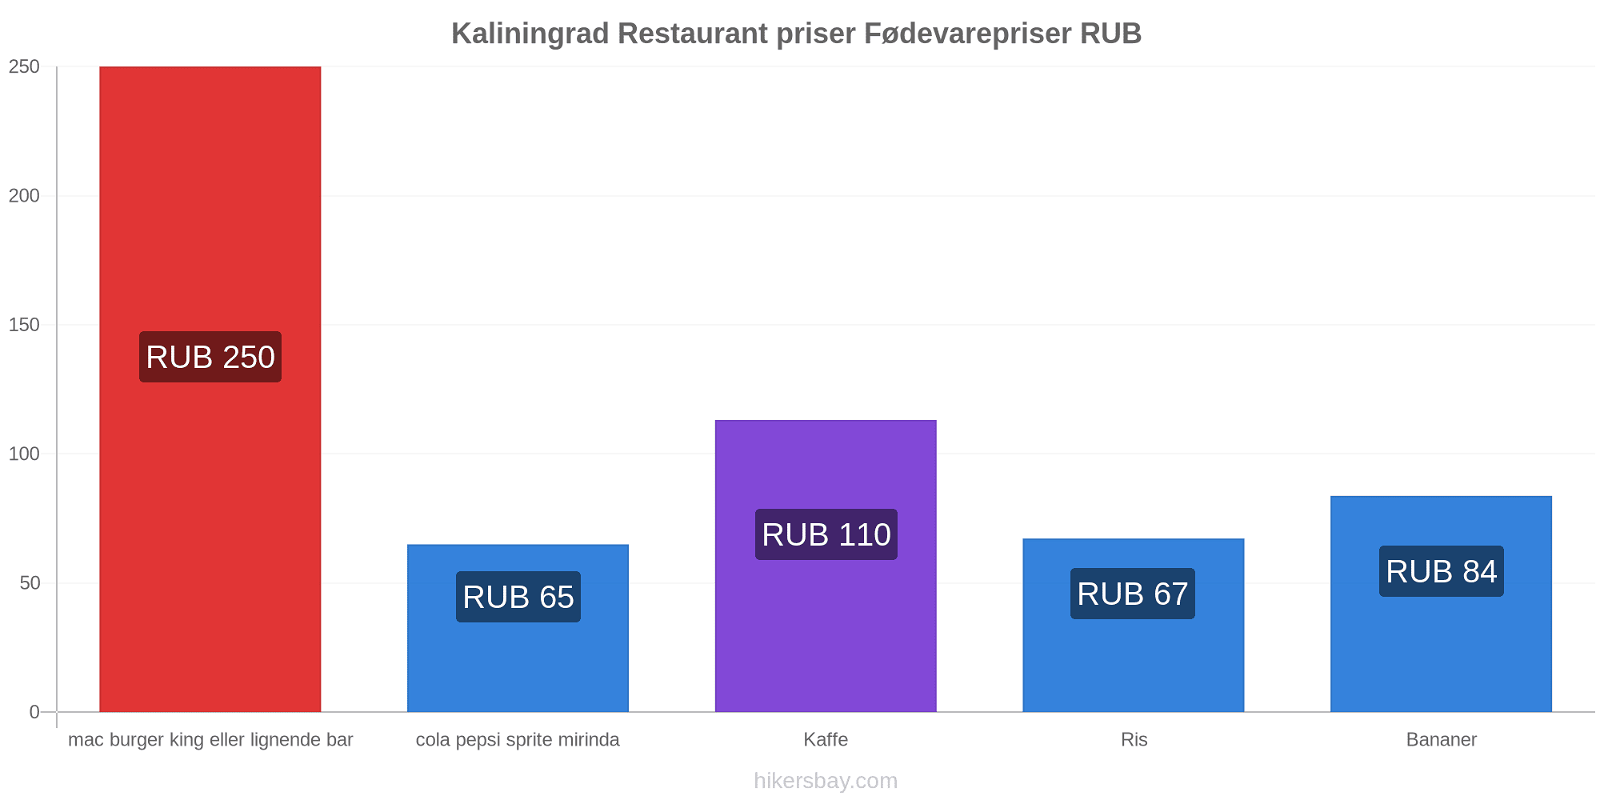 Kaliningrad prisændringer hikersbay.com